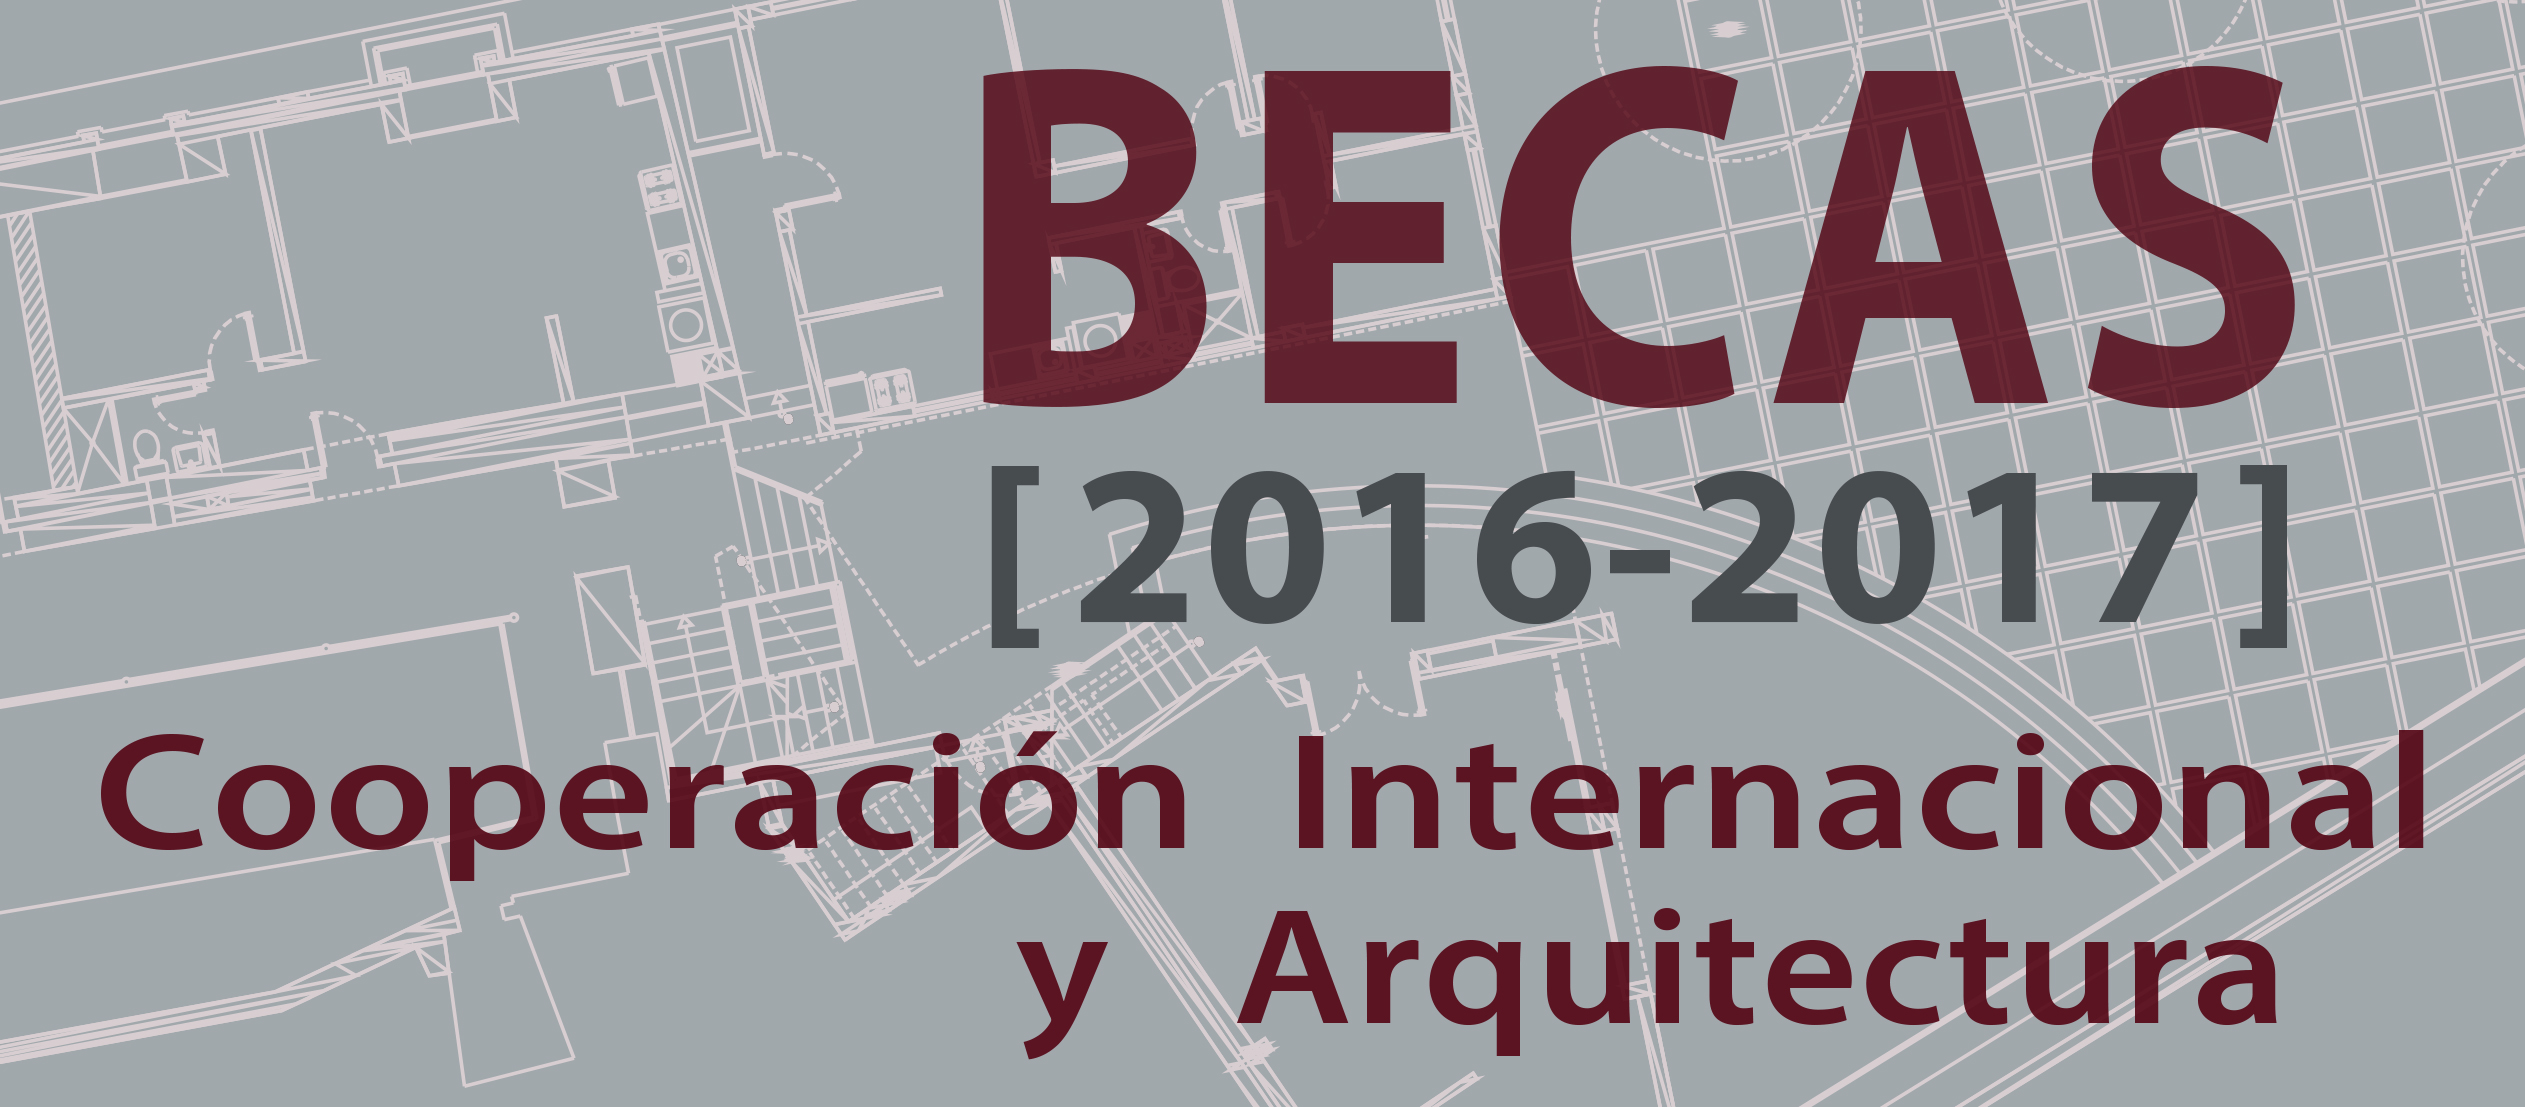 Becas 2016-17 Cooperación Internacional y Arquitectura